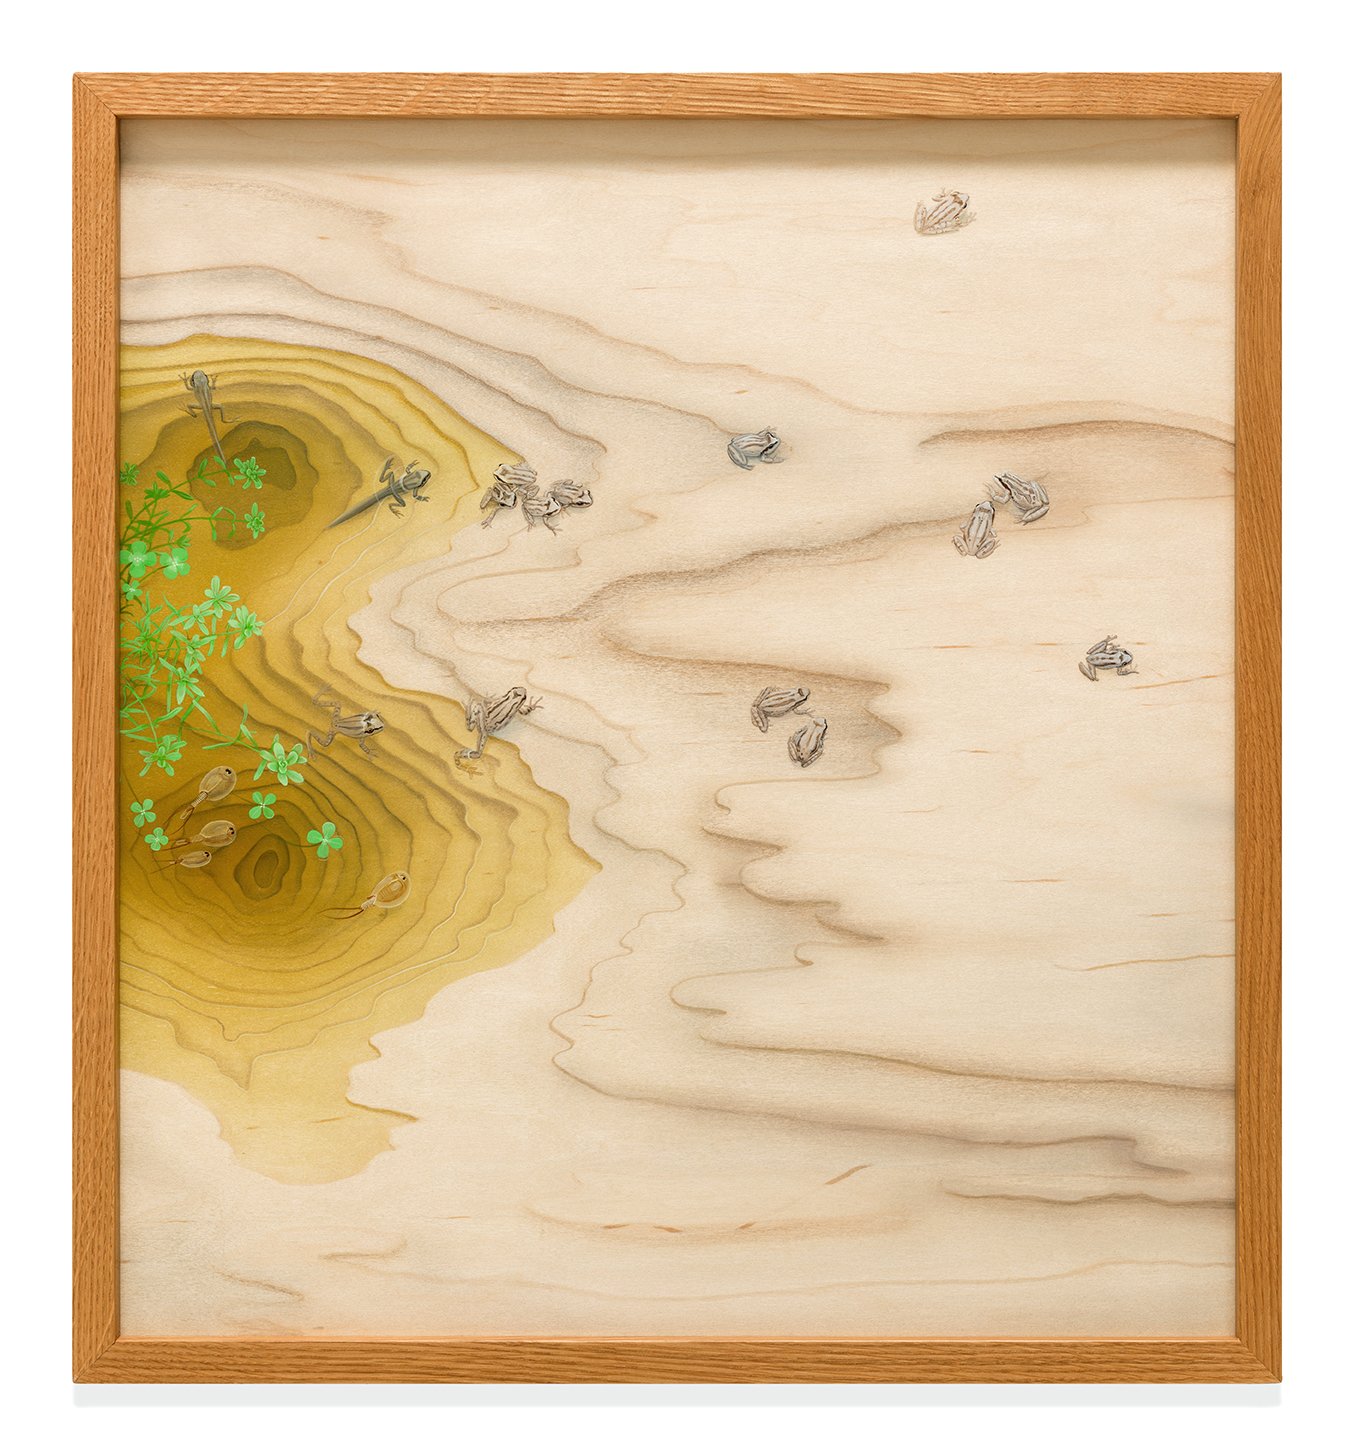  Vernal Pool, 20” x 21 ¾”, acrylic on maple panel, 2017 